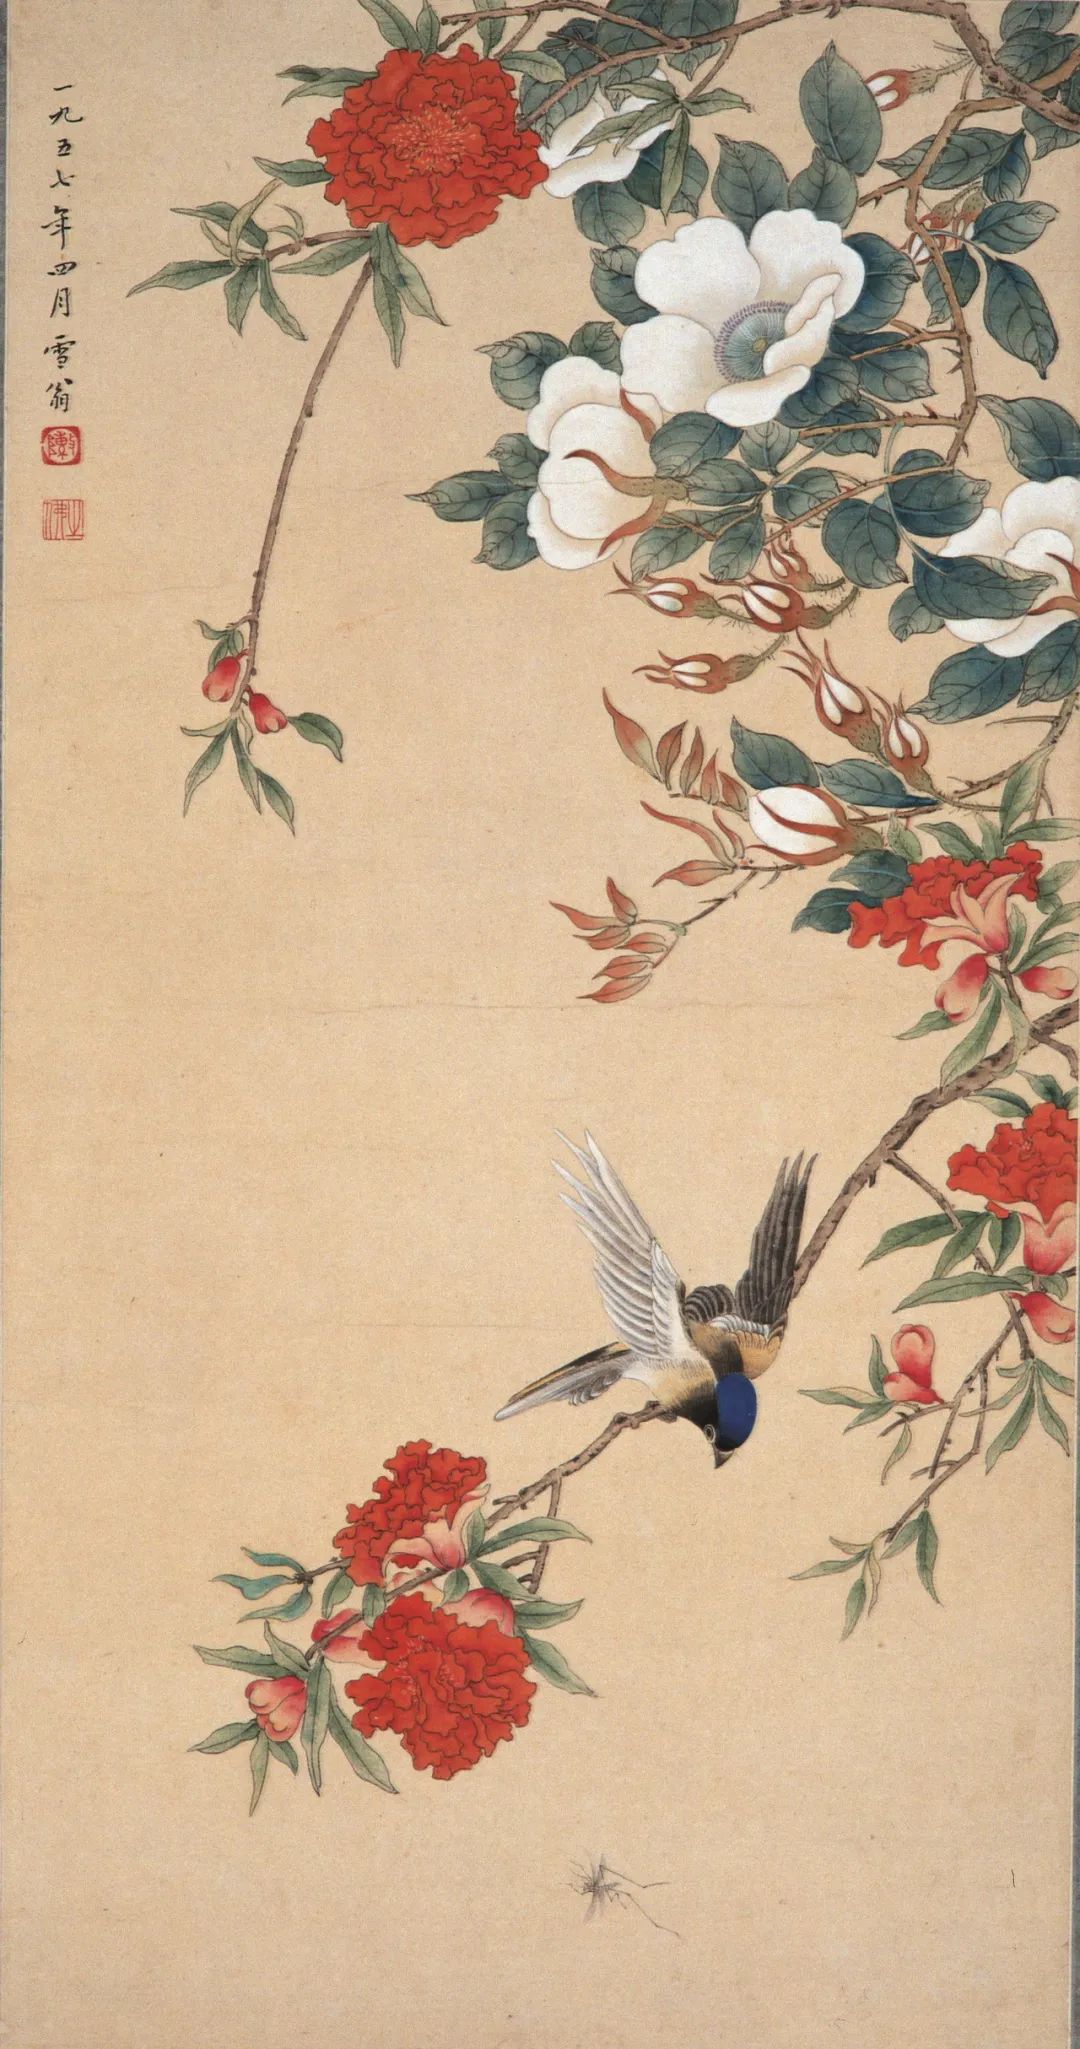 《花荫觅食》 陈之佛 中国画 69×36cm 1957年 南京博物院藏